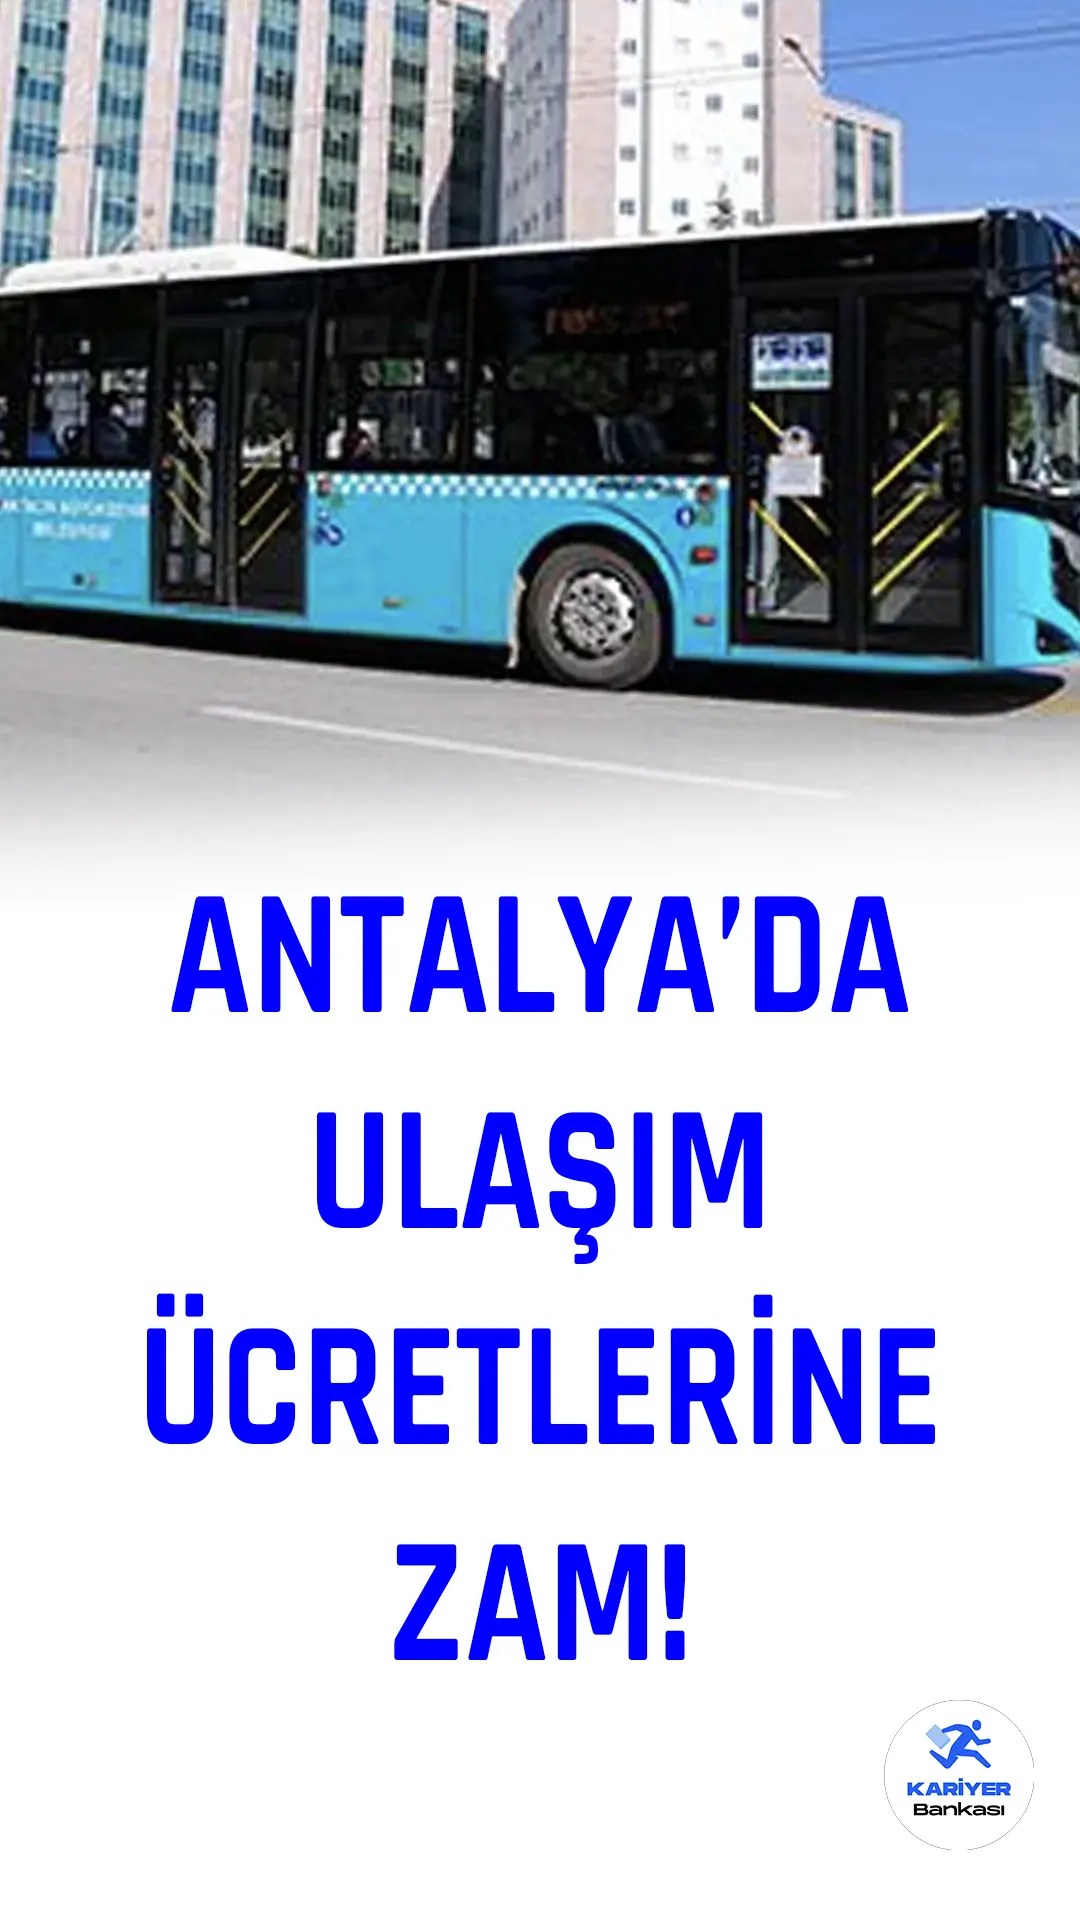 Antalya Büyükşehir Belediyesi, Ulaşım Planlama ve Raylı Sistem Dairesi Başkanlığı bünyesinde gerçekleştirilen Ulaşım Koordinasyon Merkezi Başkanlığı Genel Kurulu'nda ulaşım ücretleri için zam kararı alındı.